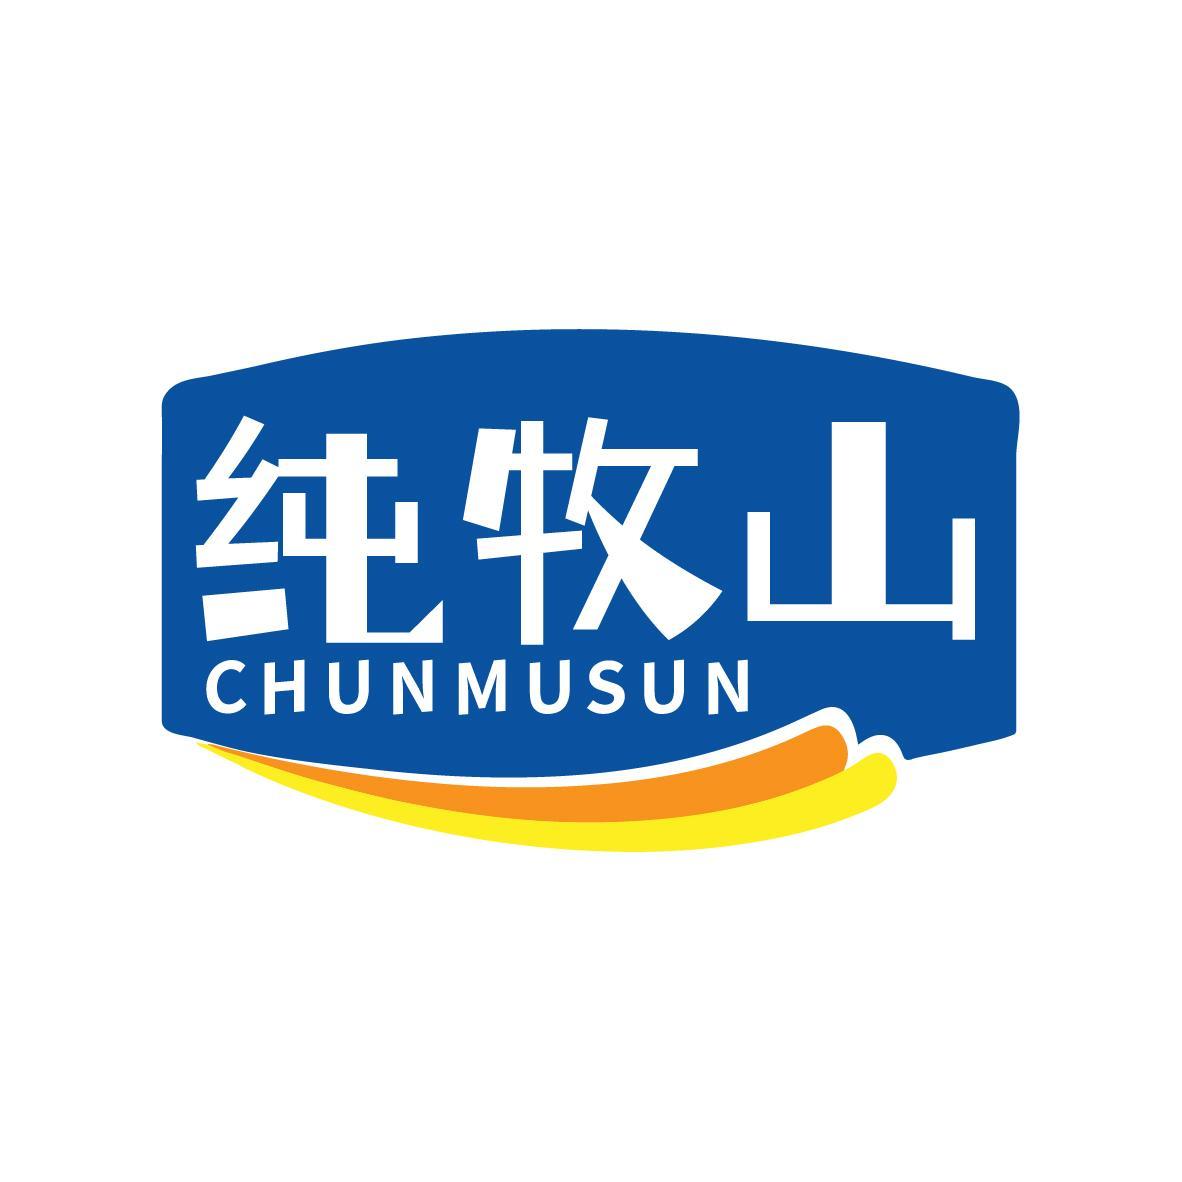 纯牧山CHUNMUSUN